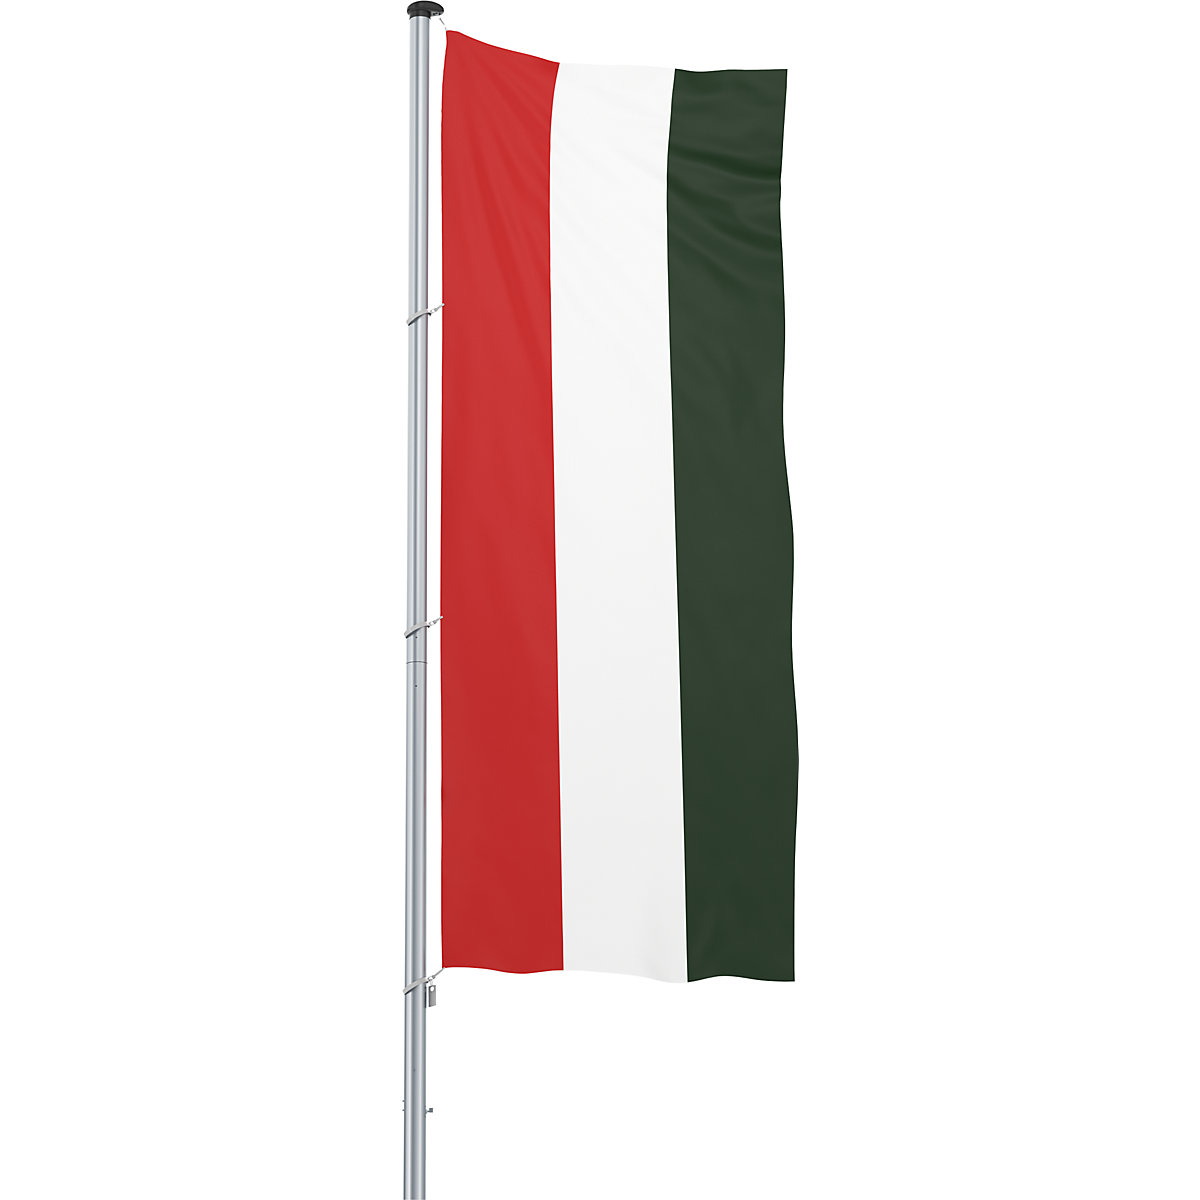 Bandeira para içar/bandeira nacional – Mannus, formato 1,2 x 3 m, Hungria-7